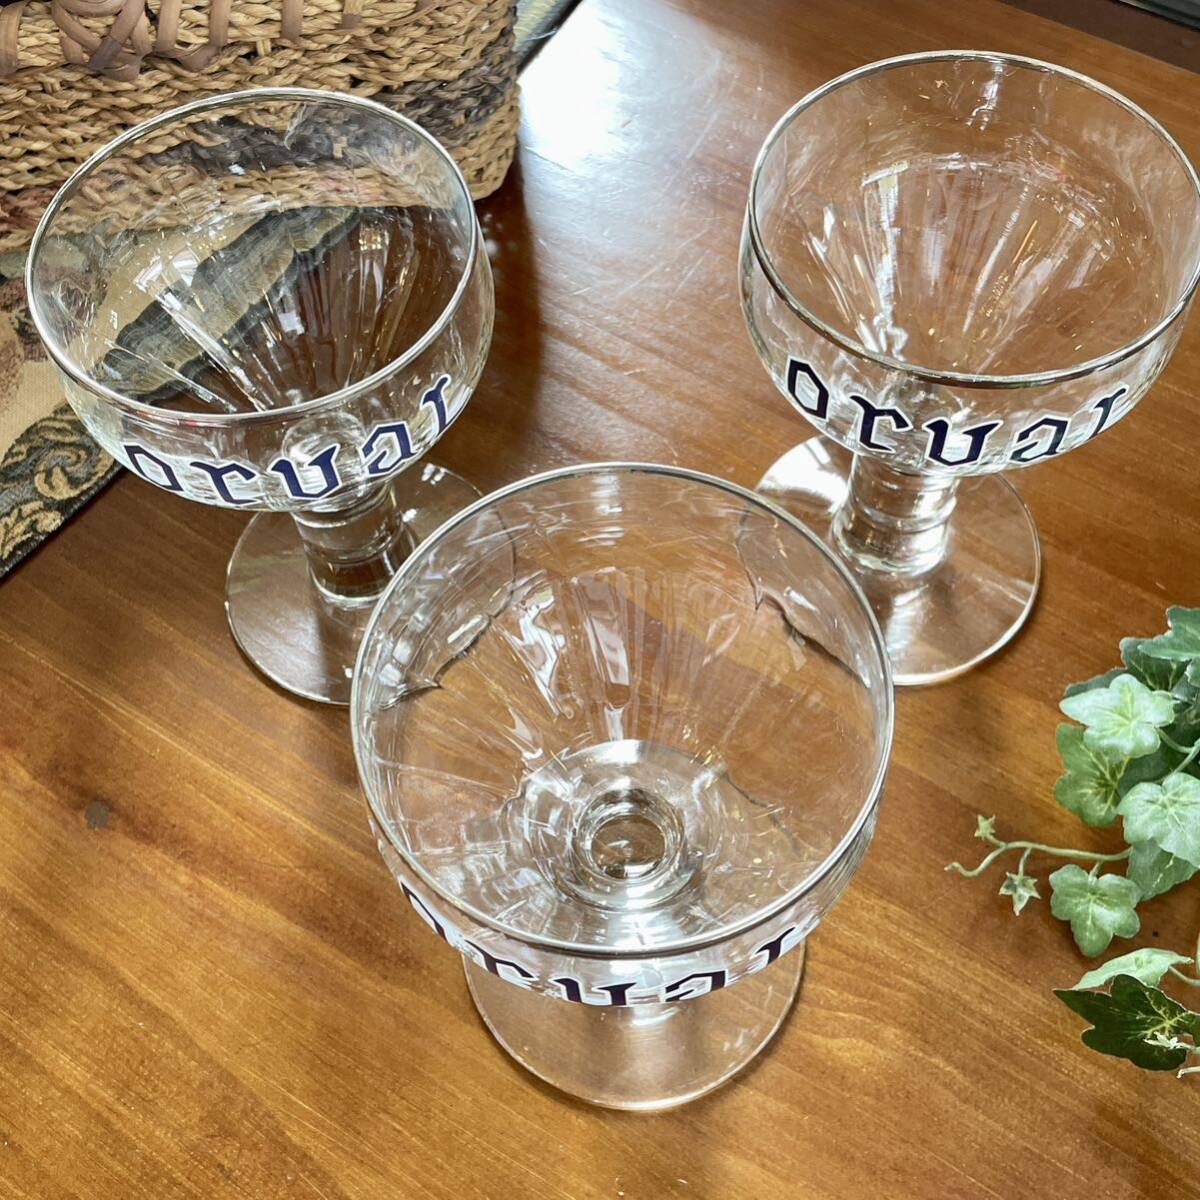 r197 ベルギー オルヴァル グラス 聖杯型 ゴブレットグラス 3点 カッコイイヴィンテージグラス コレクション ビールグラス の画像7